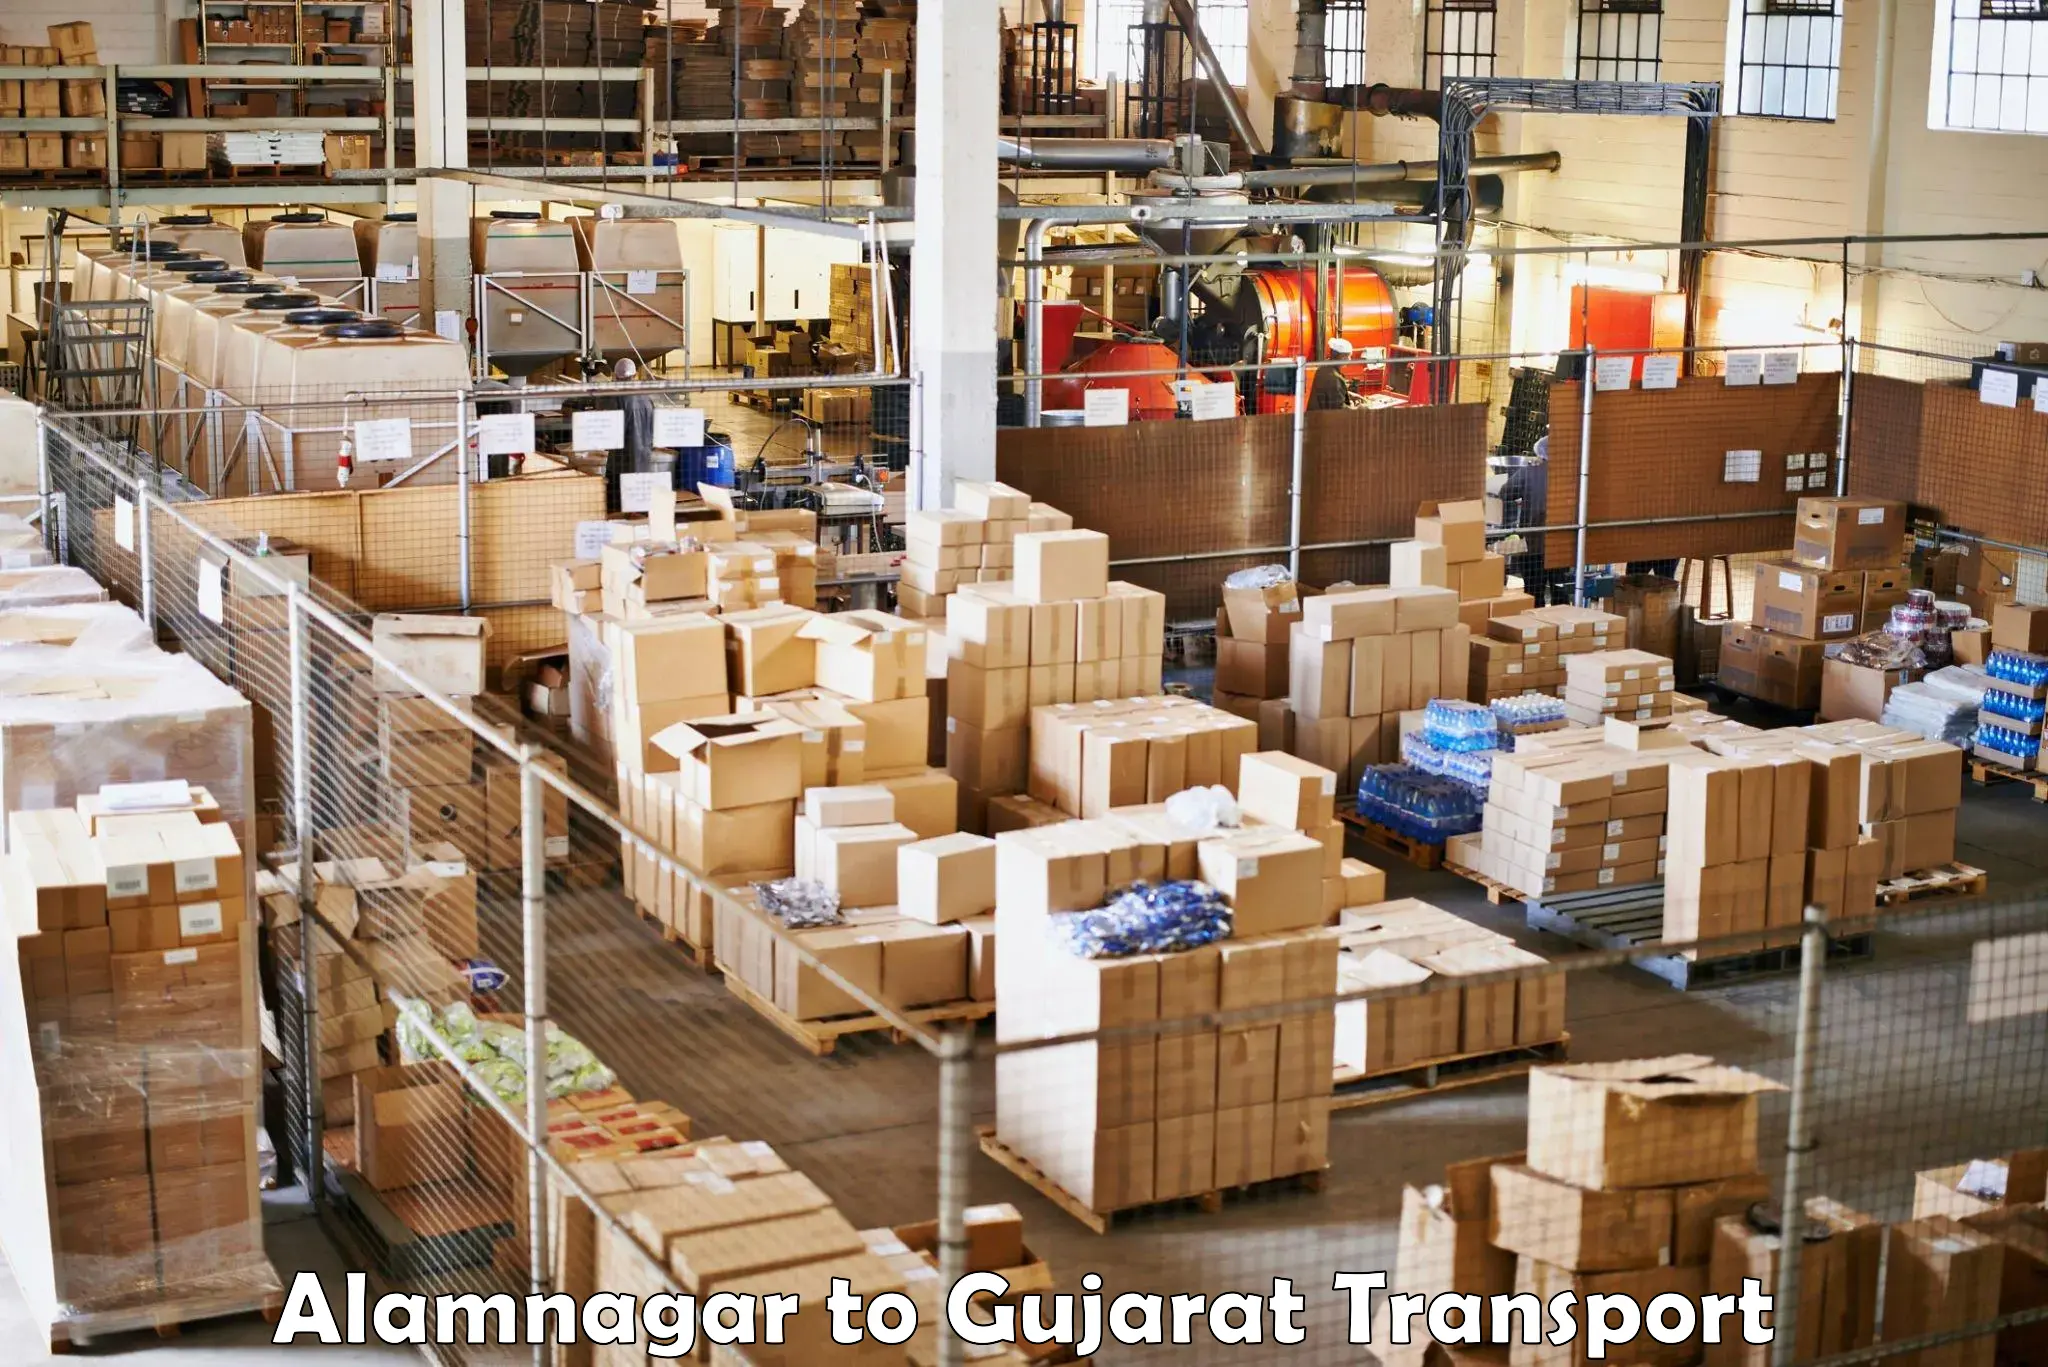 Lorry transport service Alamnagar to Becharaji